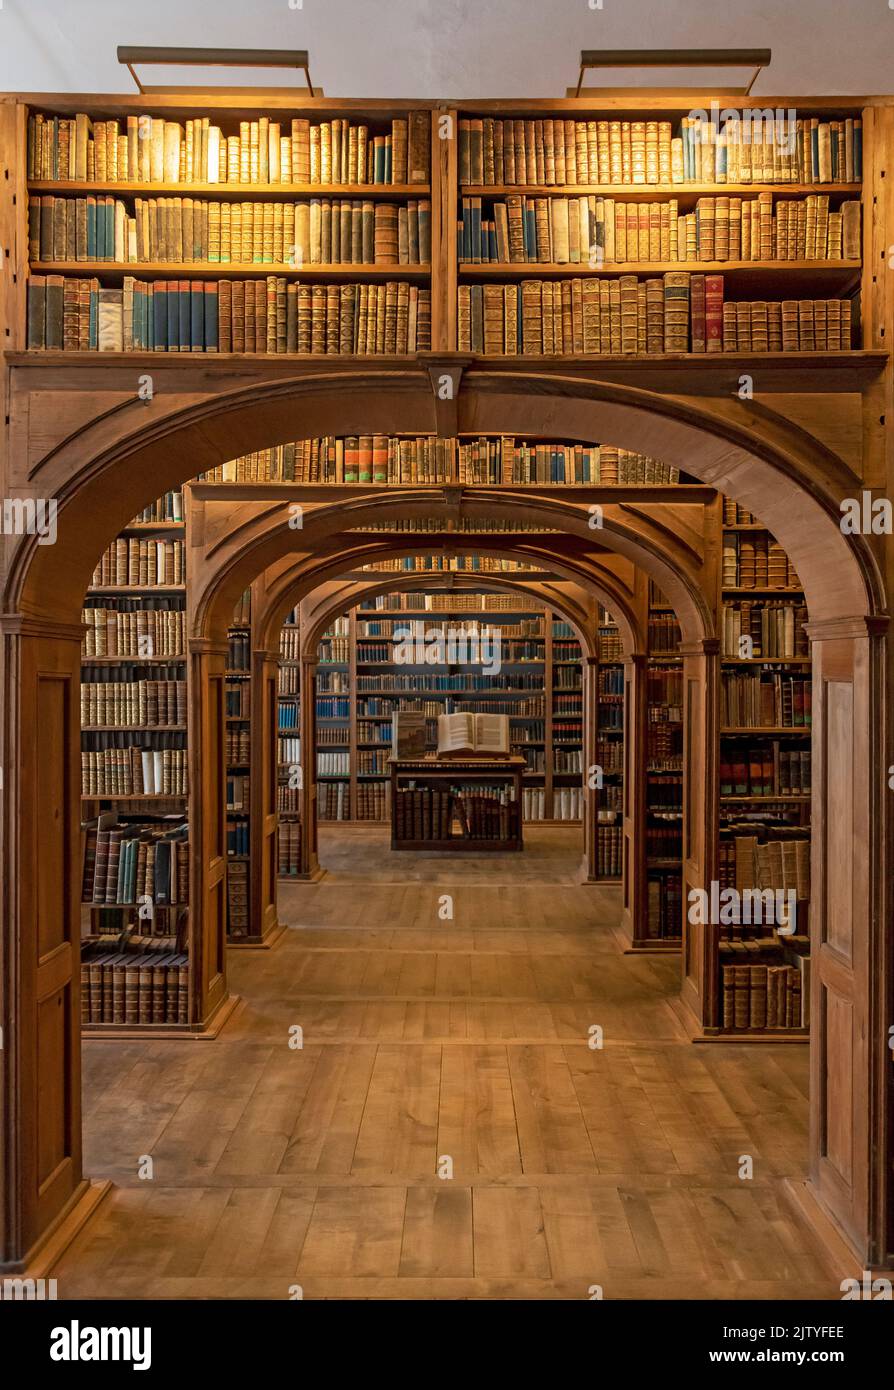 Histórico Library Hall, Biblioteca de Ciencias de la Alta Lusacia, Barockhaus, Görlitz (Goerlitz), Alemania Foto de stock